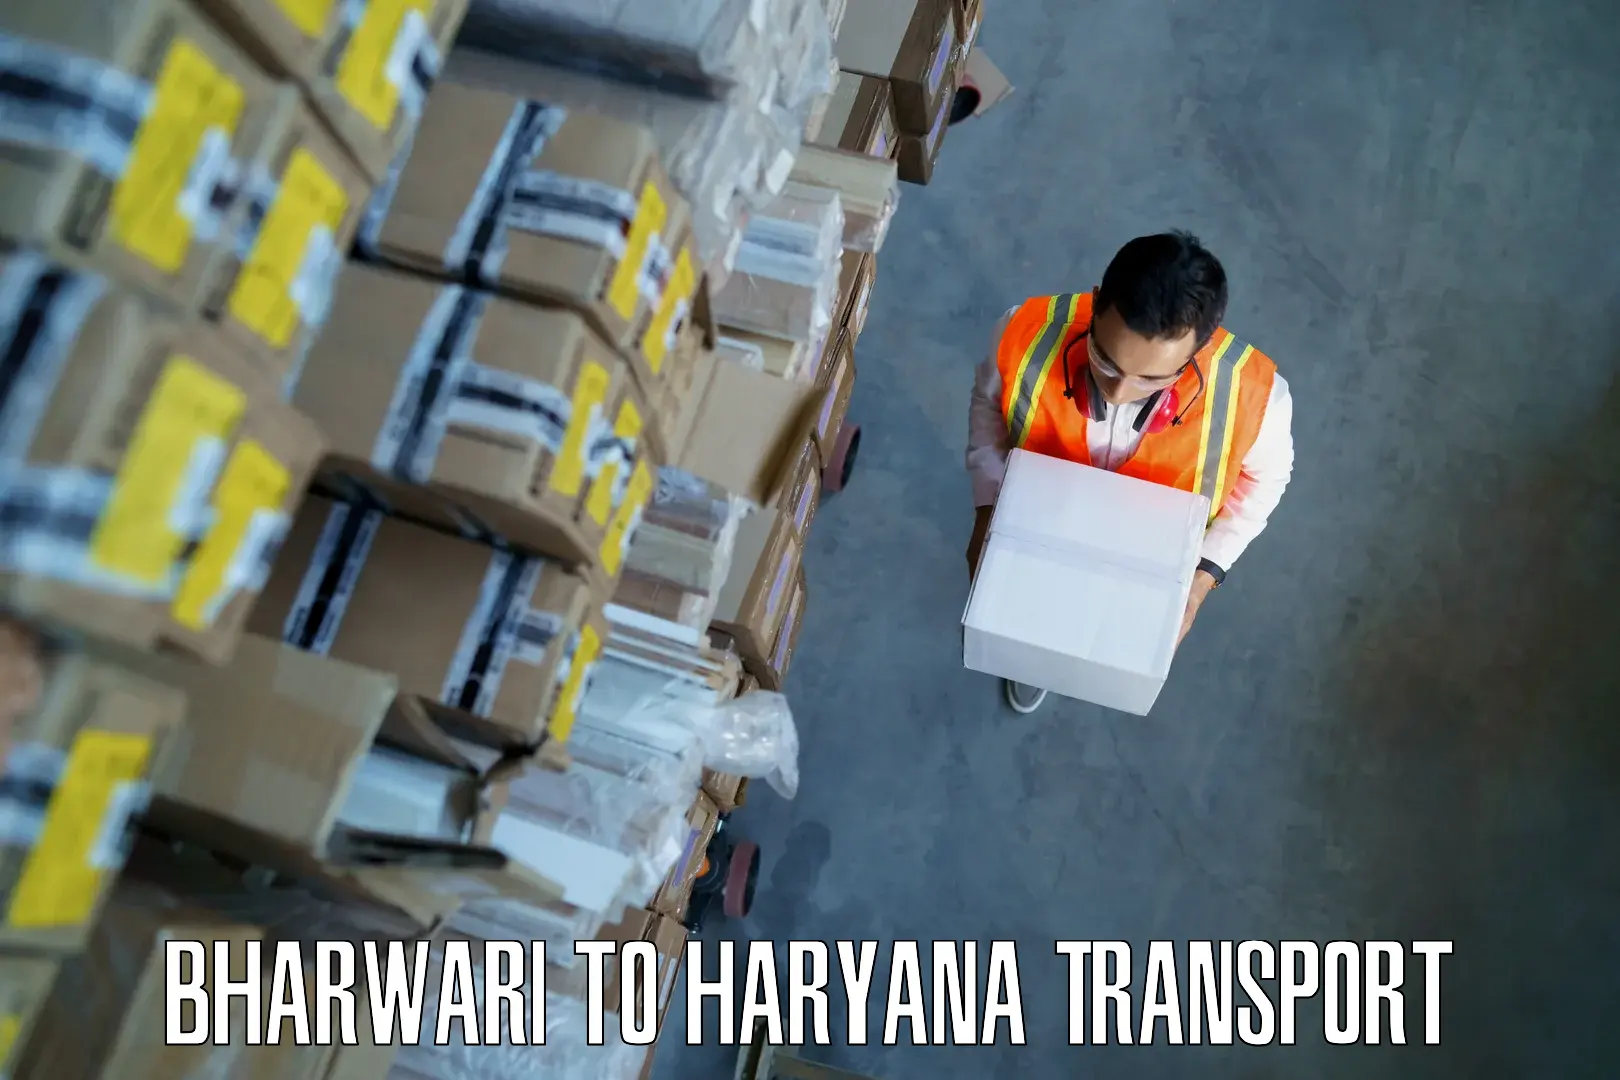 Container transport service Bharwari to Bhuna